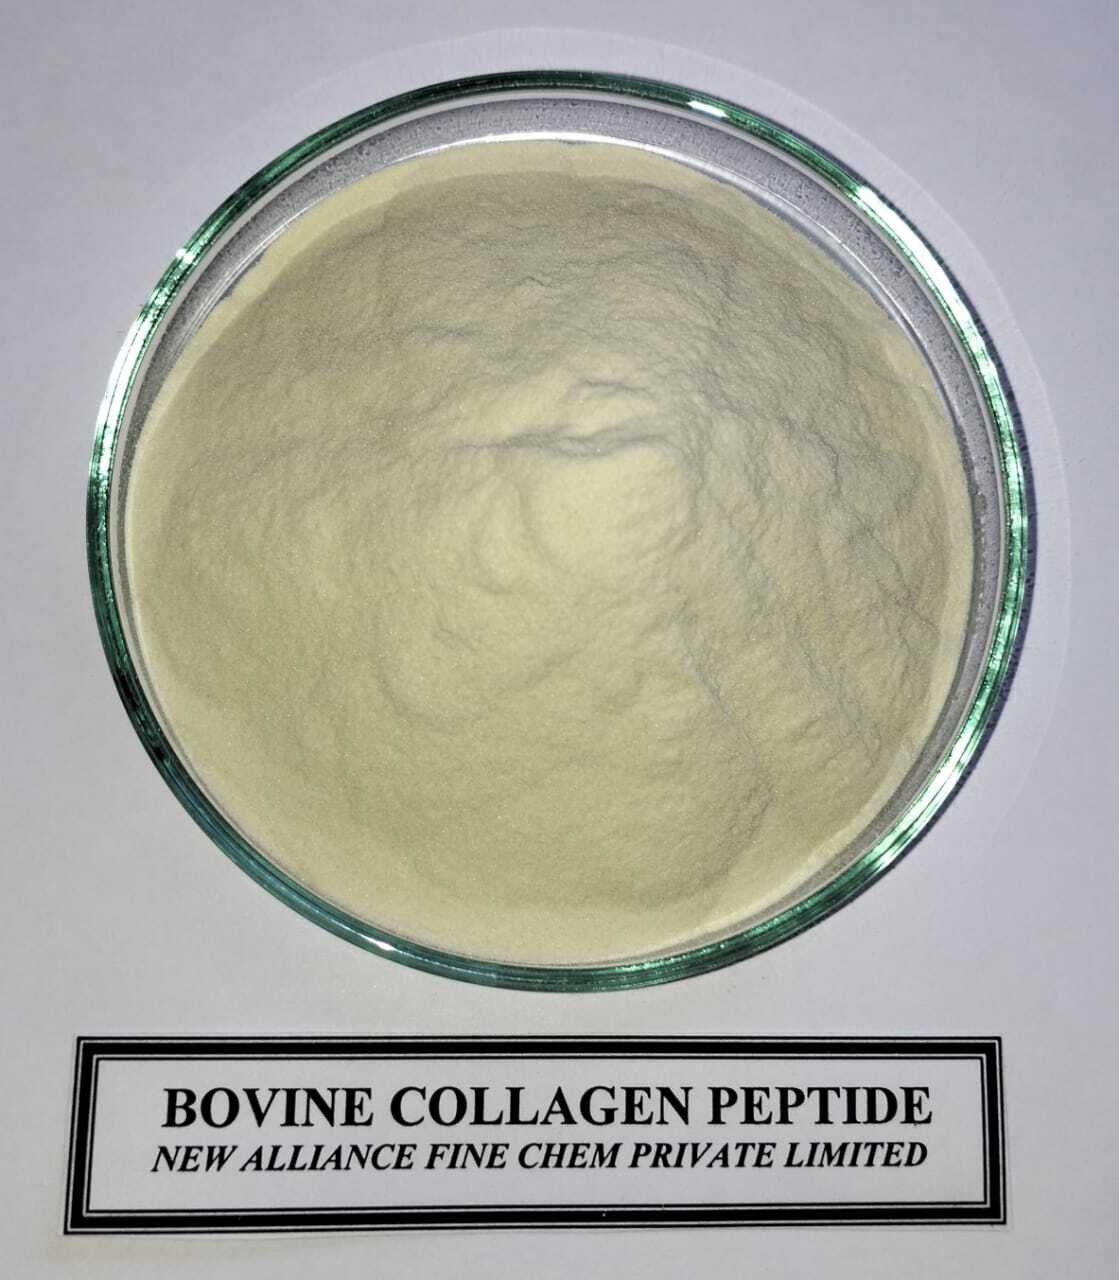 Bovine Collagen Peptide